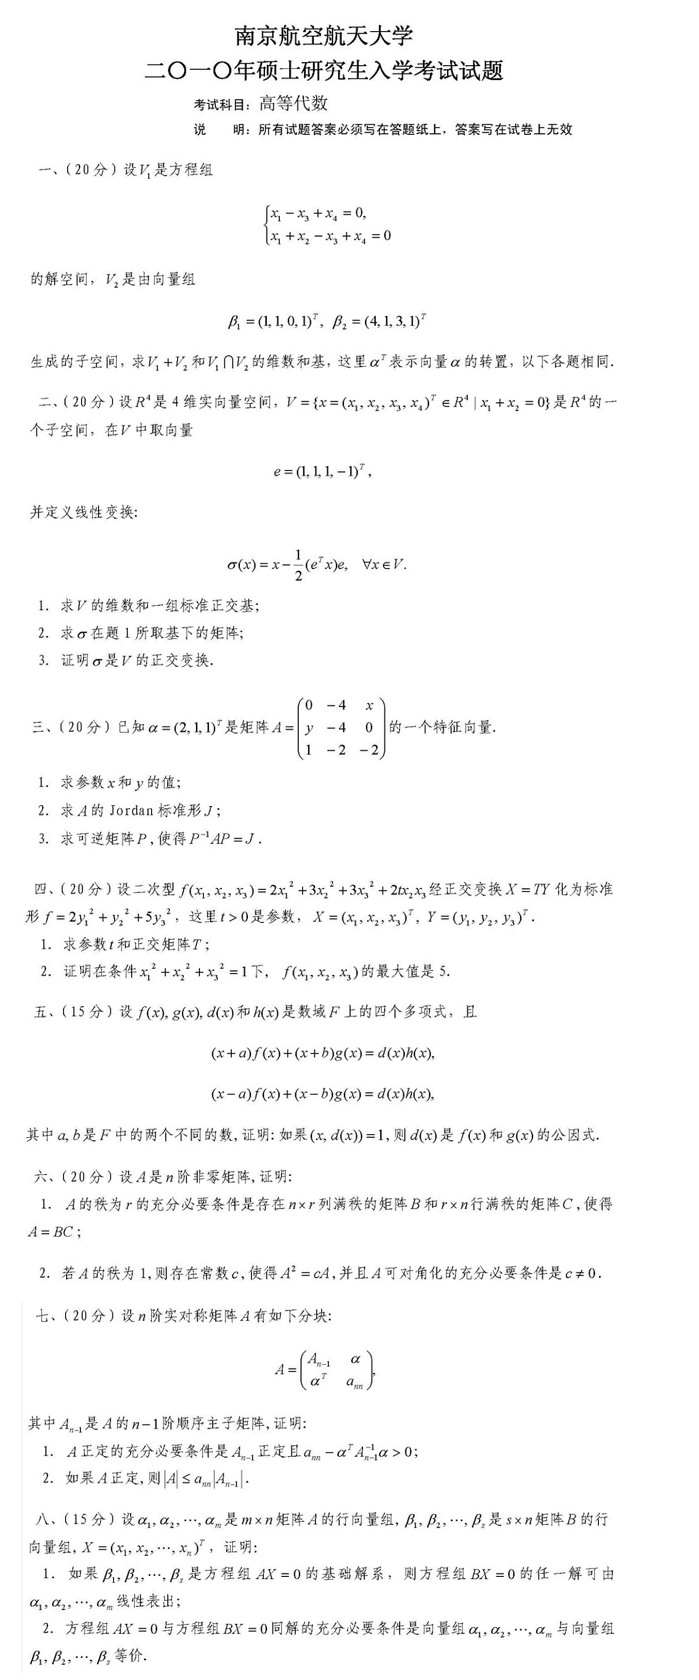 2010南京航空航天大学考研数学真题（高等代数）.png